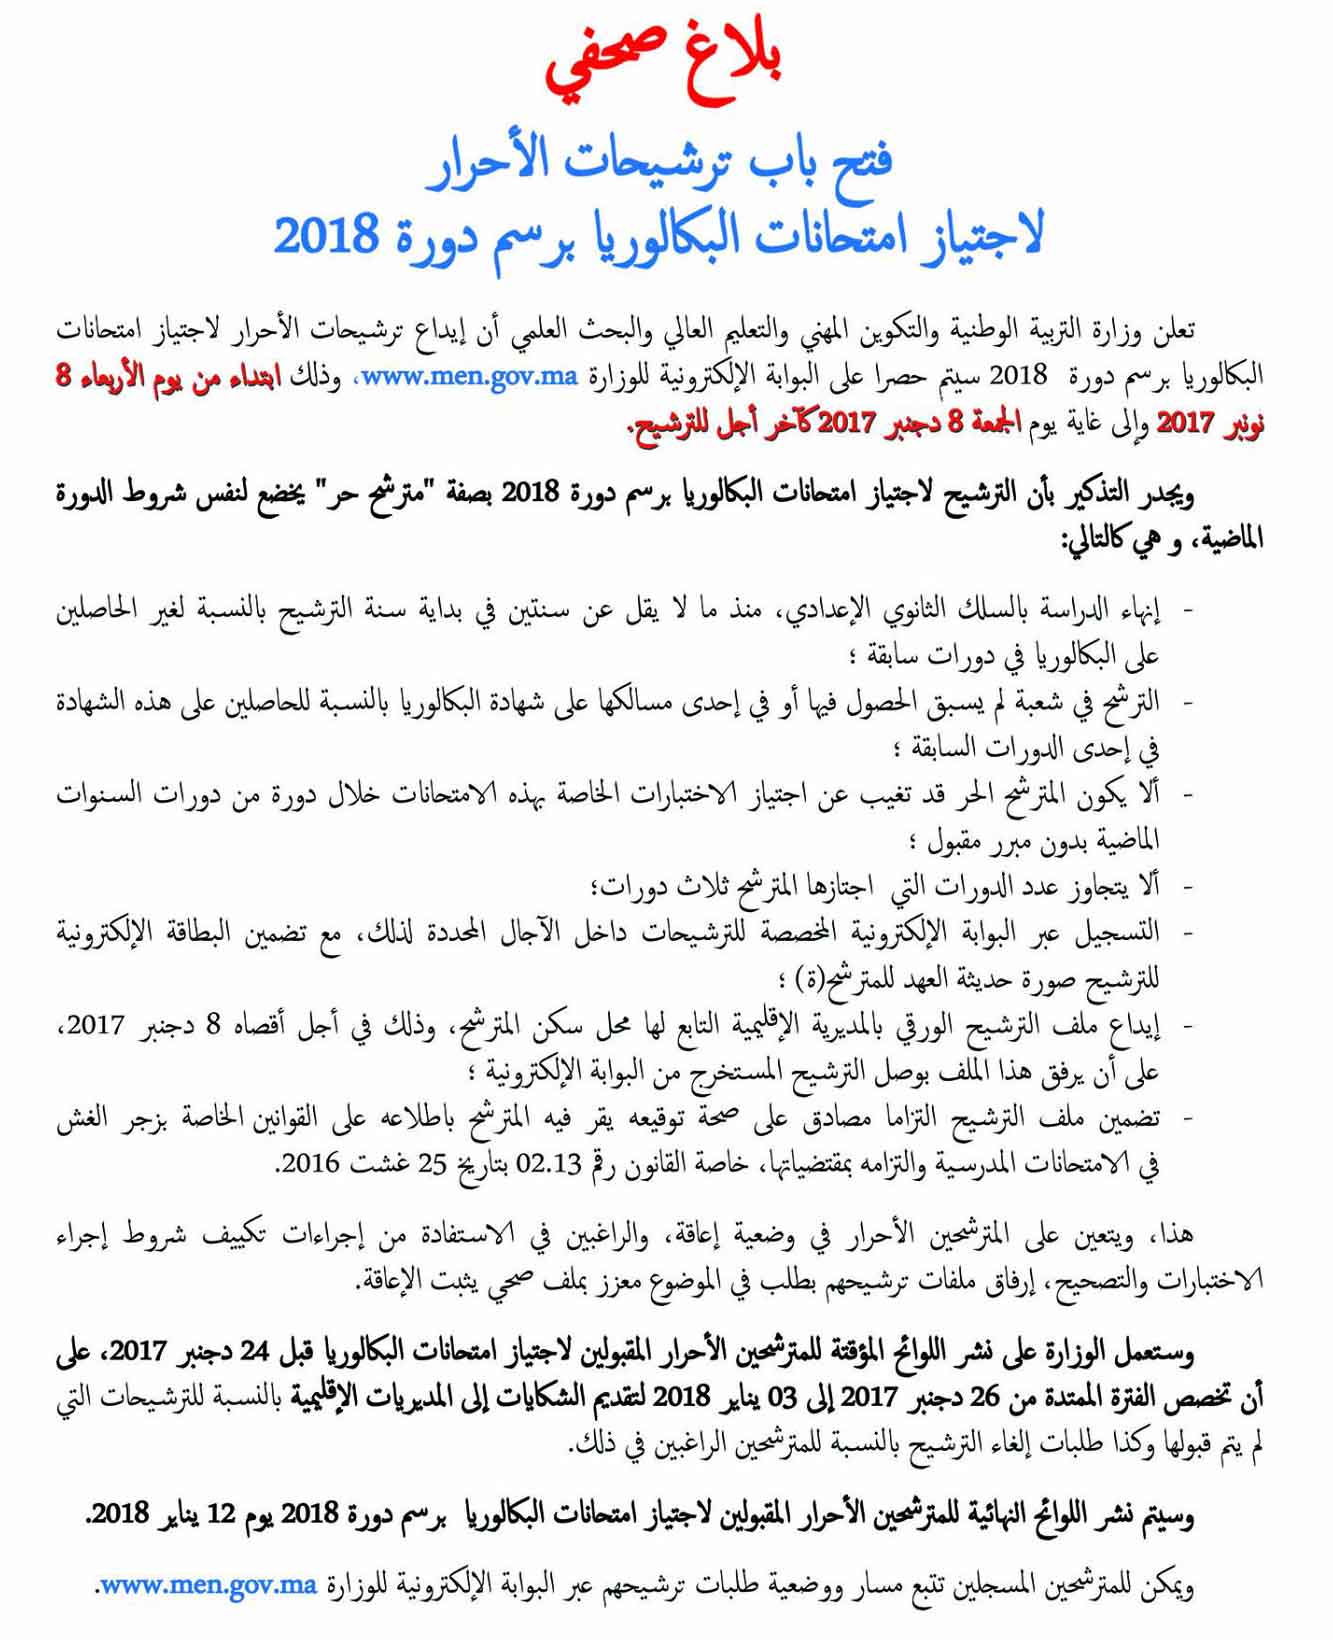 تاريخ انطلاق التسجيل والترشح باك حر 2018 المغرب Bac Libre Maroc